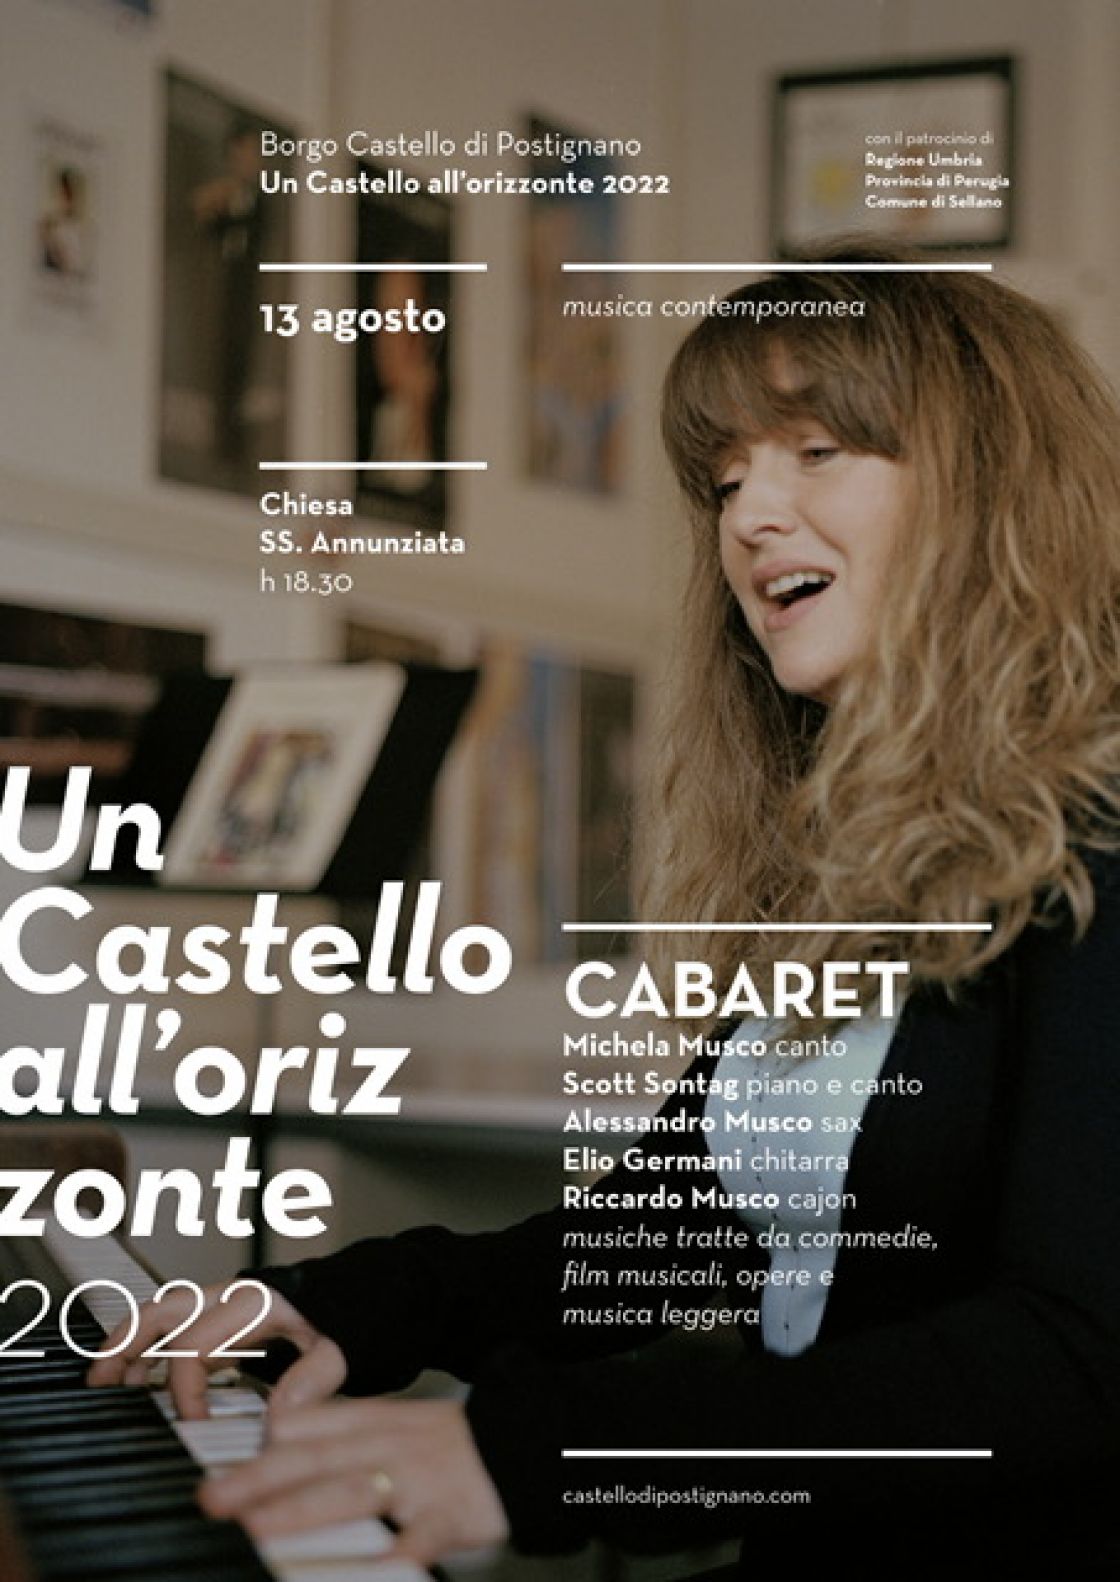 CABARET AL CASTELLO: concerto di musica contemporanea, sabato 13 agosto a Castello di Postignano (PG)